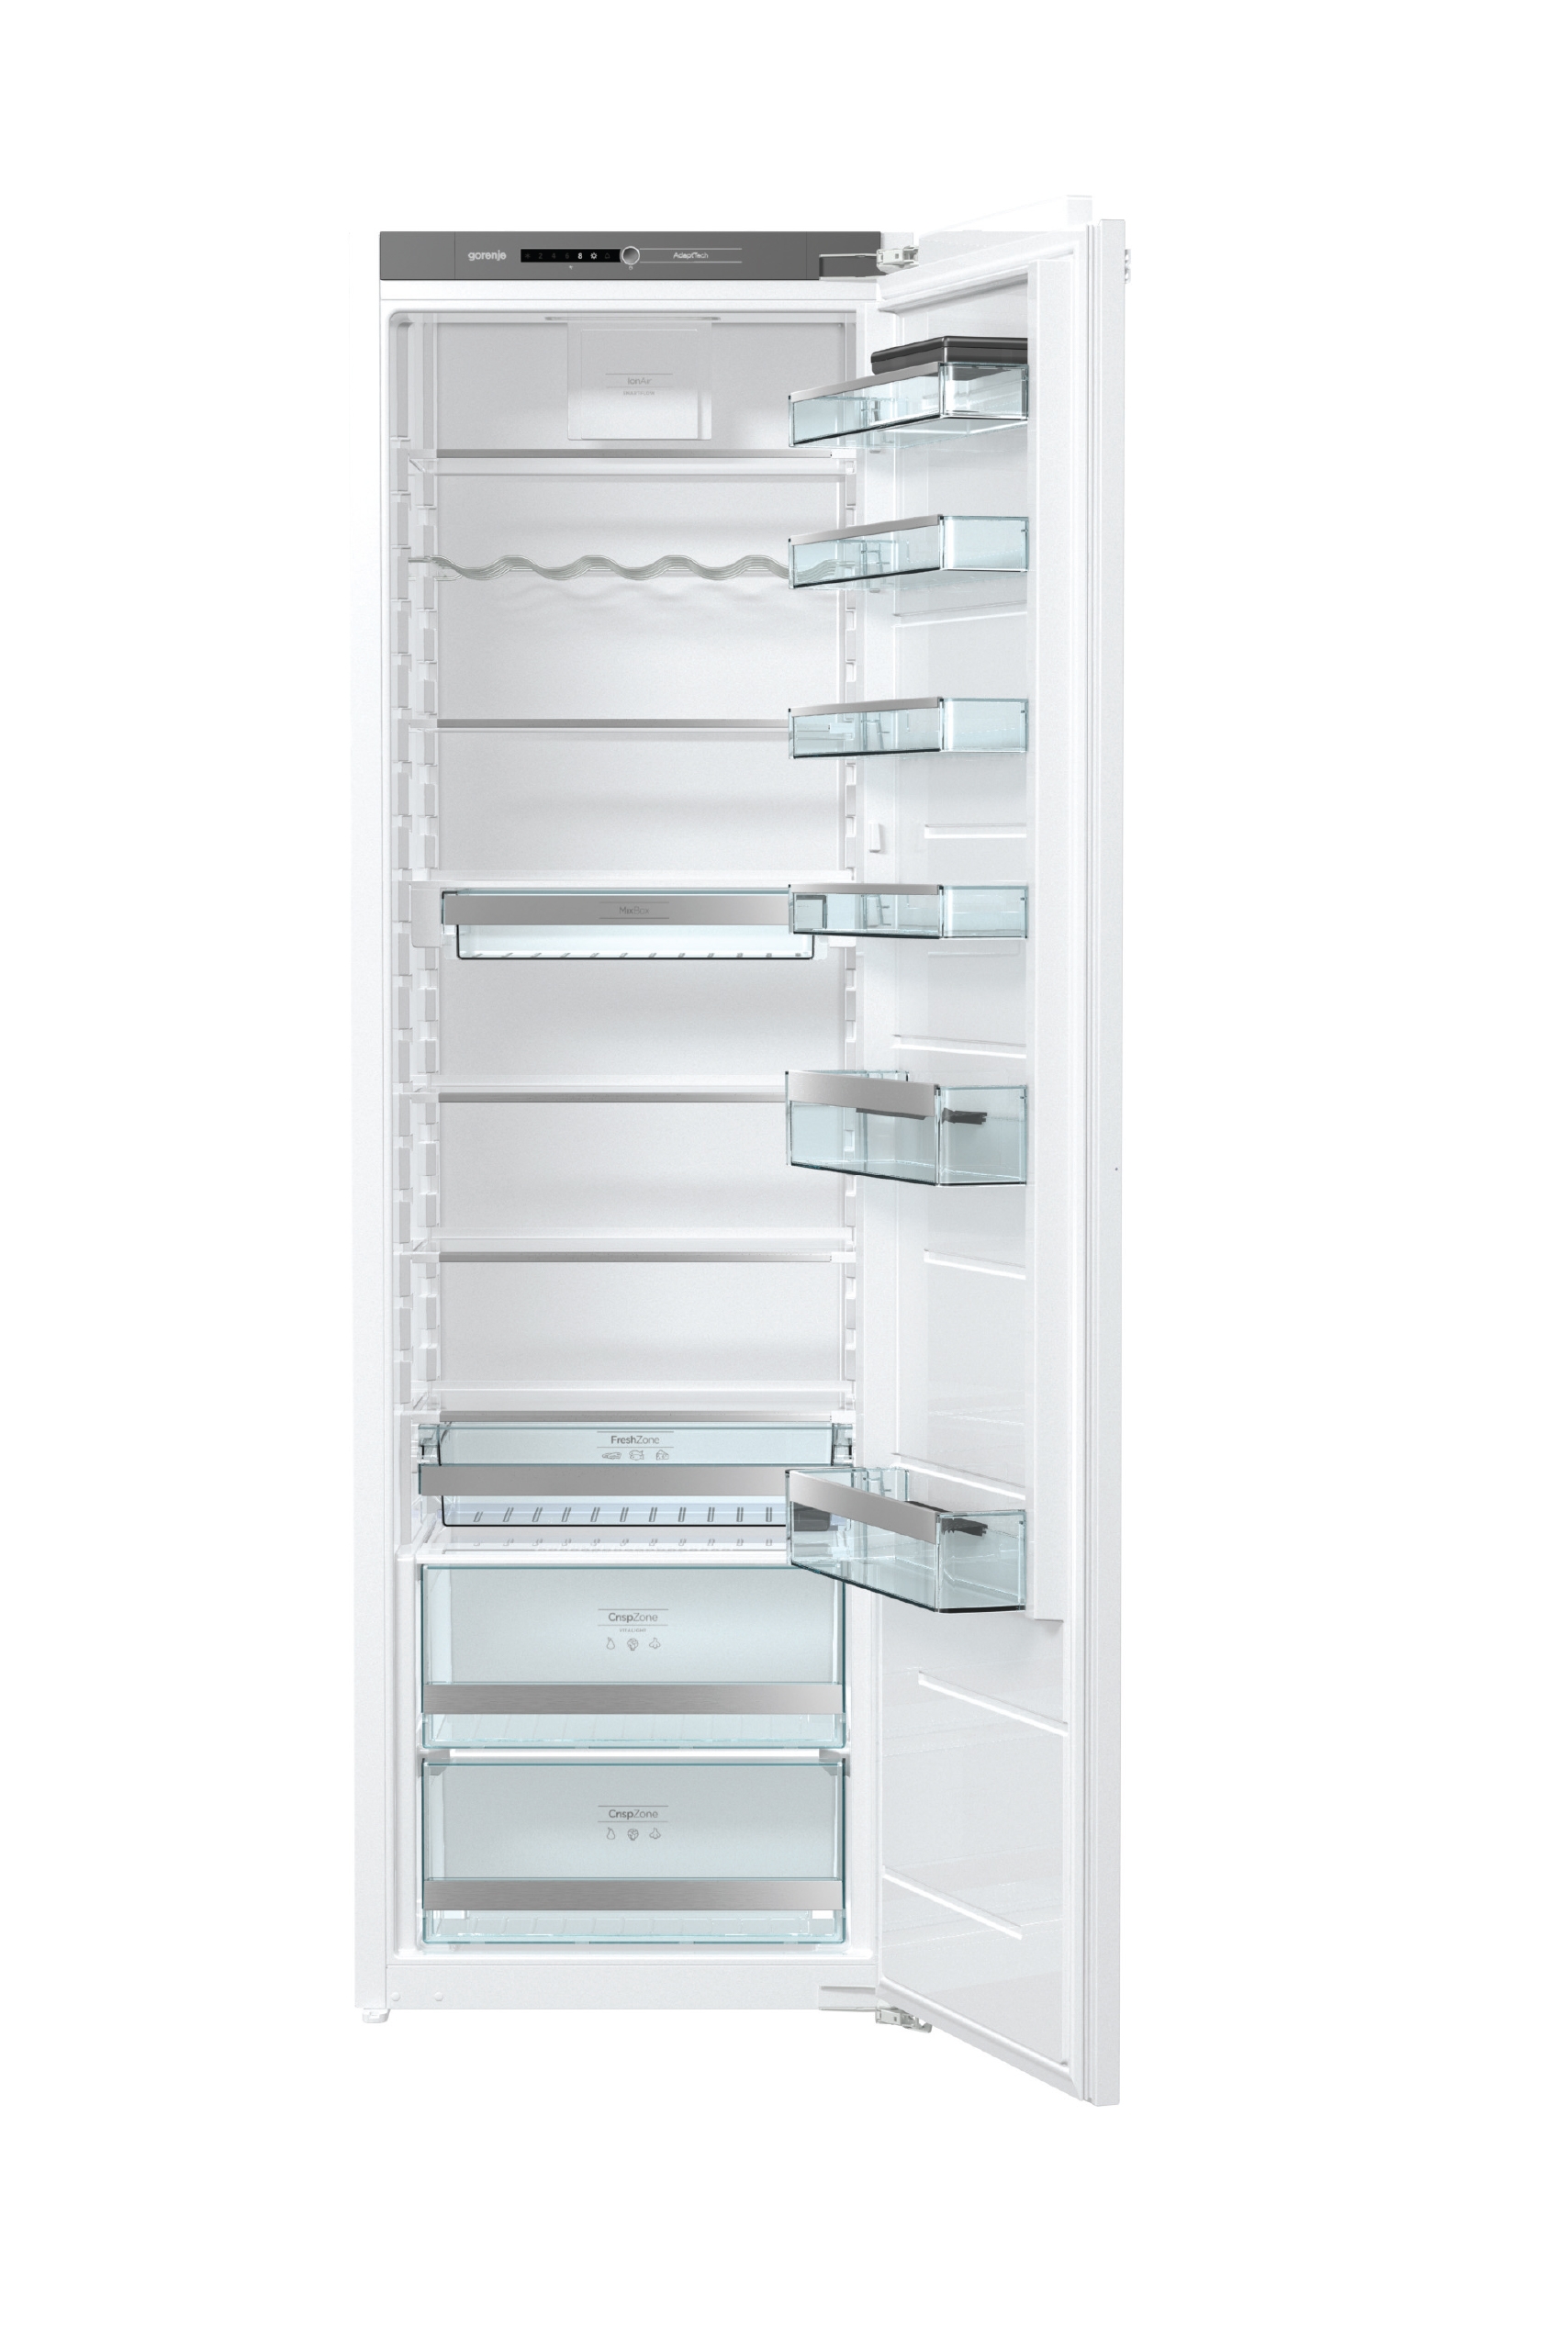 Gorenje Built-in Refrigerator 305 Liter White